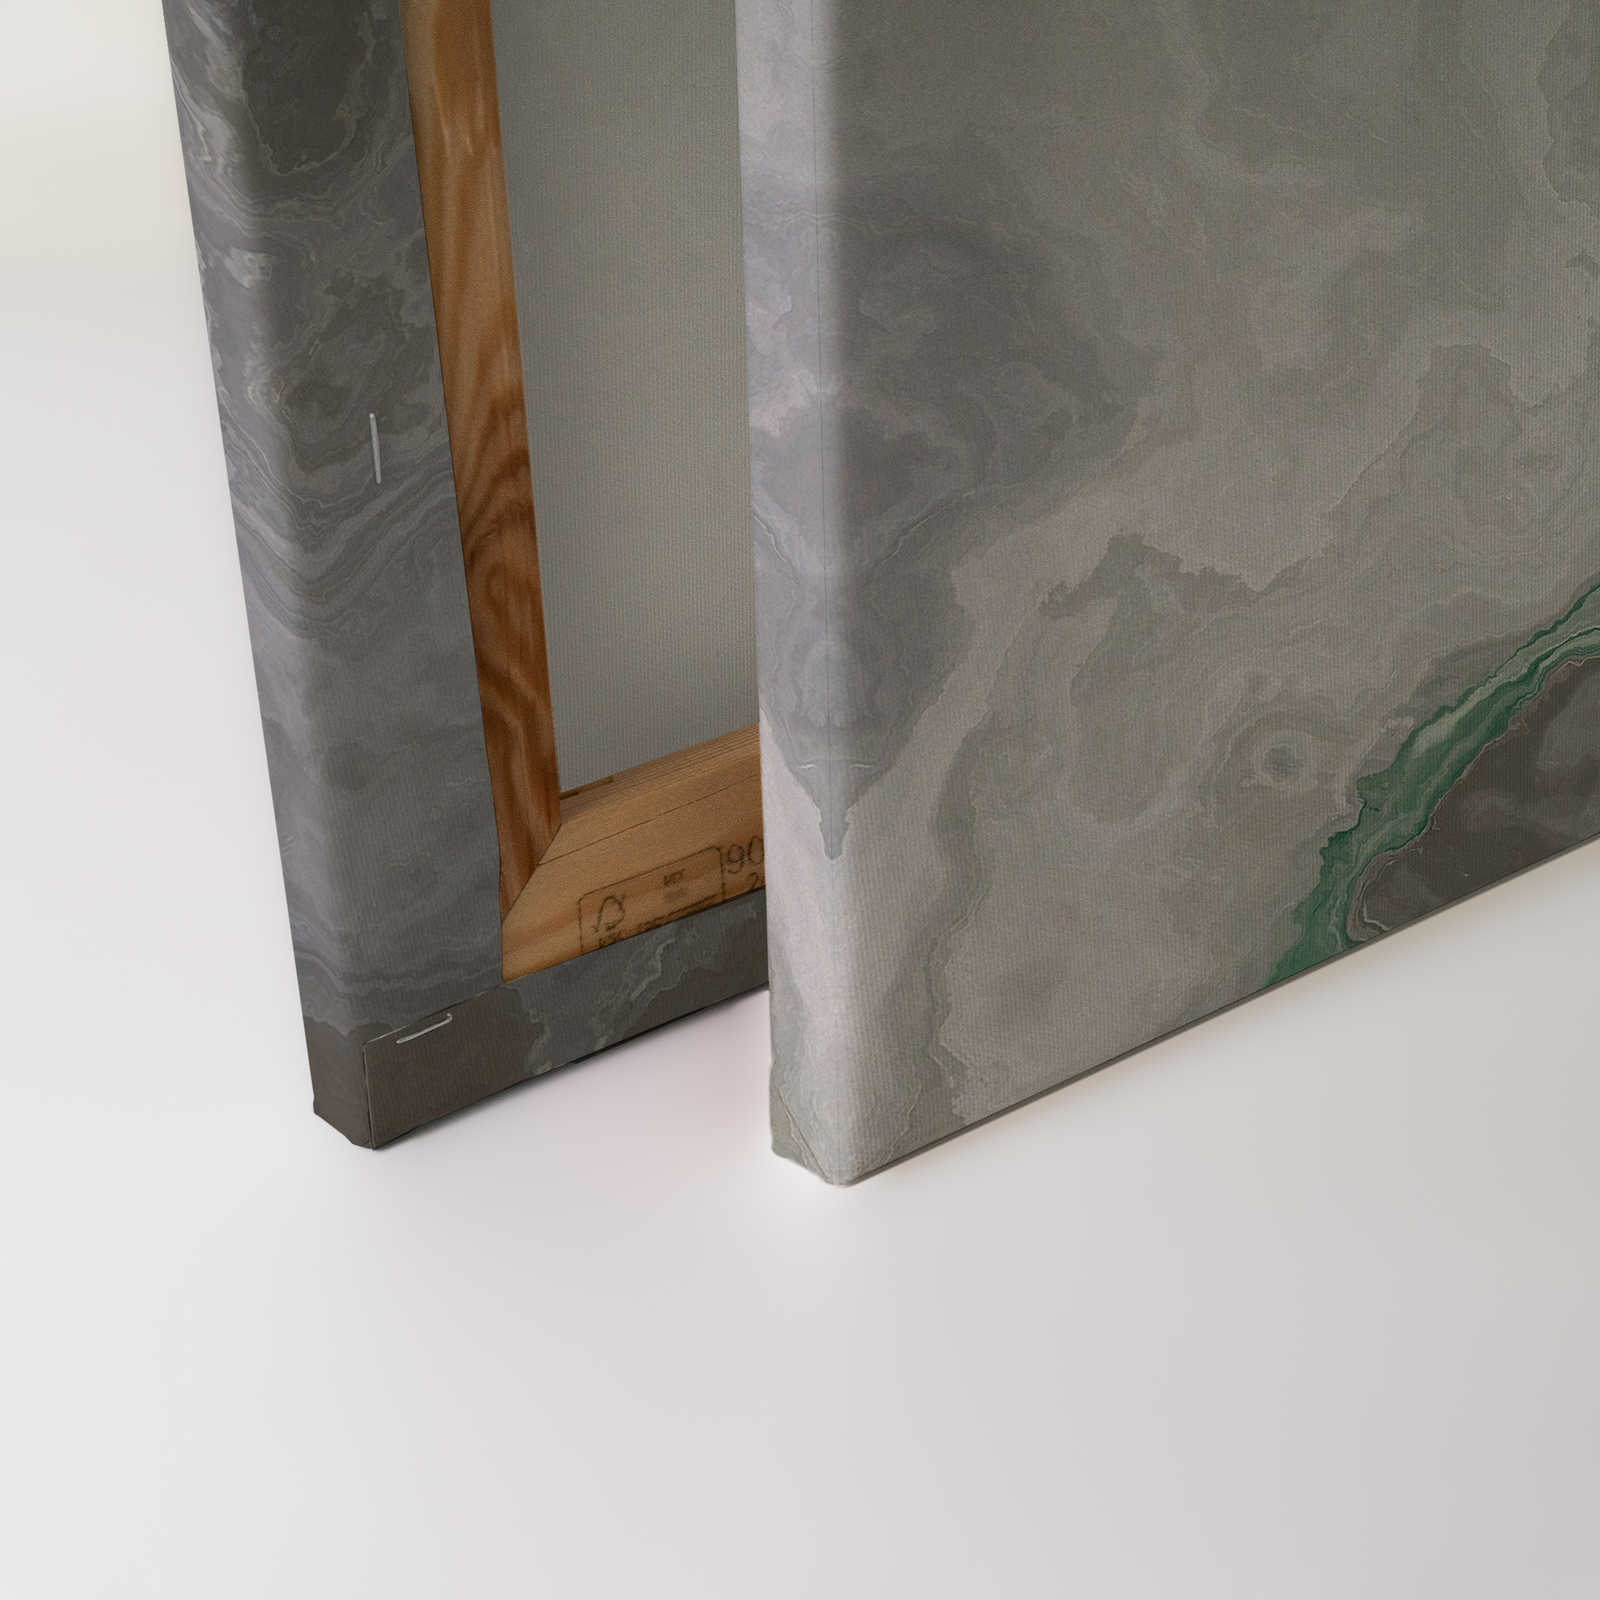             Quadro su tela al quarzo con marmorizzazione - 1,20 m x 0,80 m
        